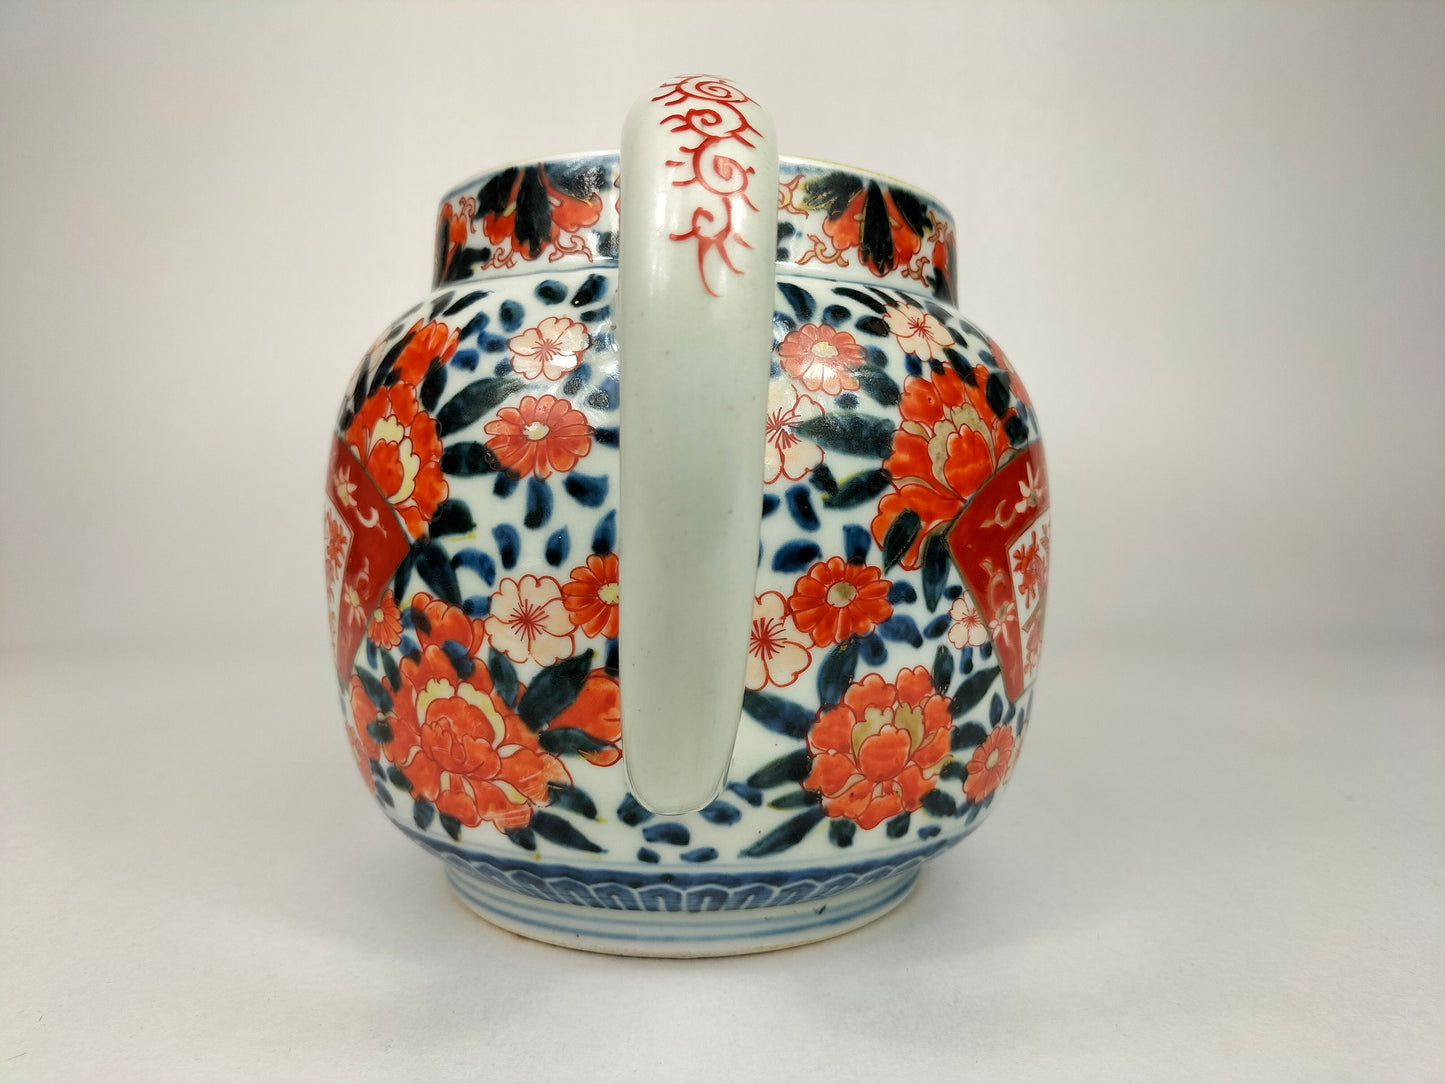 Bình đựng nước imari cổ lớn của Nhật Bản được trang trí họa tiết hoa // Thời Minh Trị - thế kỷ 19